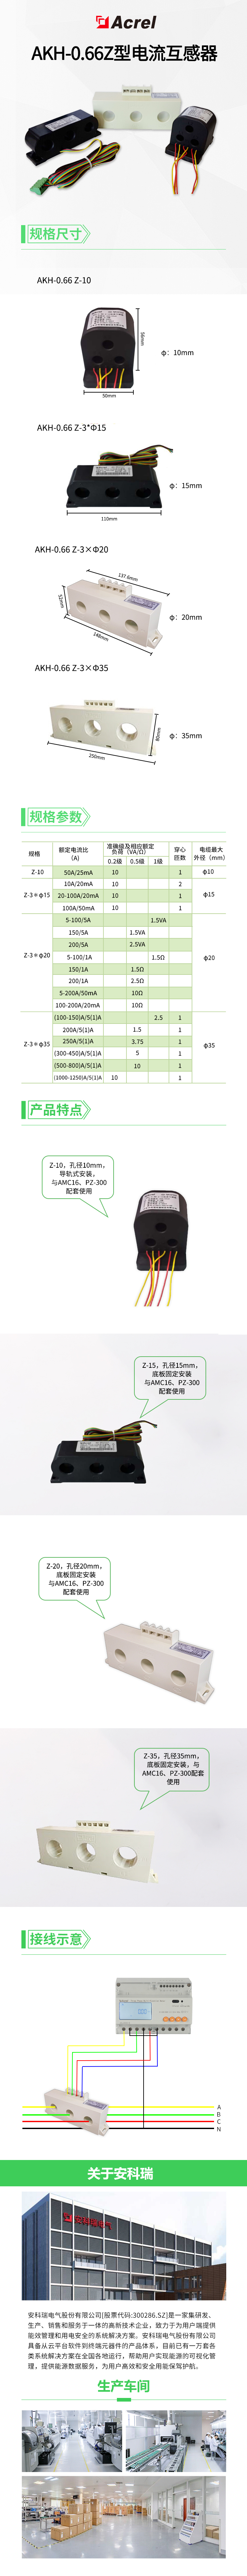 安科瑞AKH-0.66Z系列电流互感器多用途开口式 电量传感器